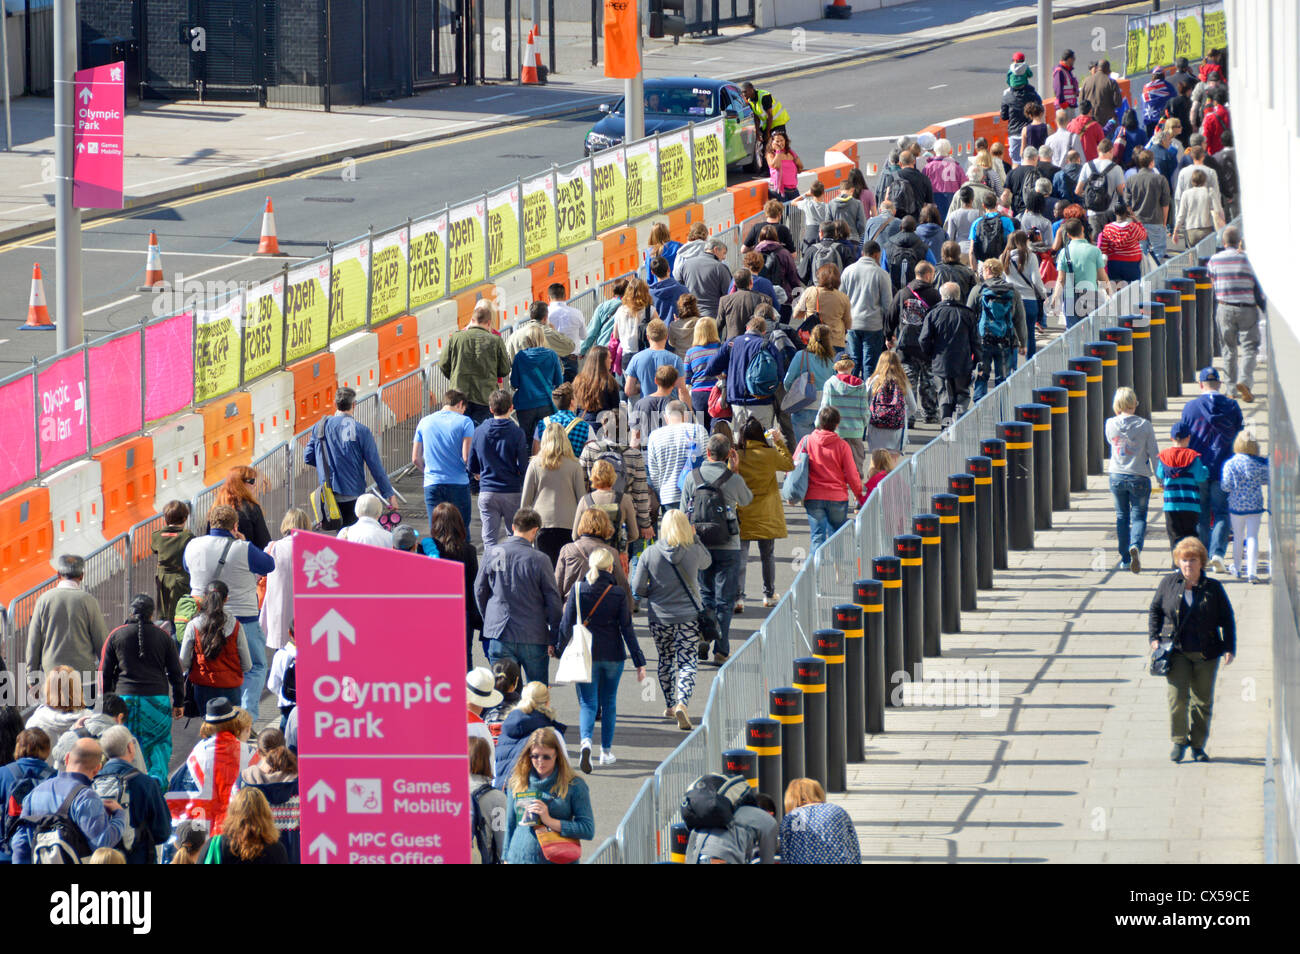 Vue aérienne foule de spectateurs à la gare de Stratford en direction de l'entrée du parc olympique de 2012 pour les Jeux paralympiques est de Londres Angleterre Royaume-Uni Banque D'Images